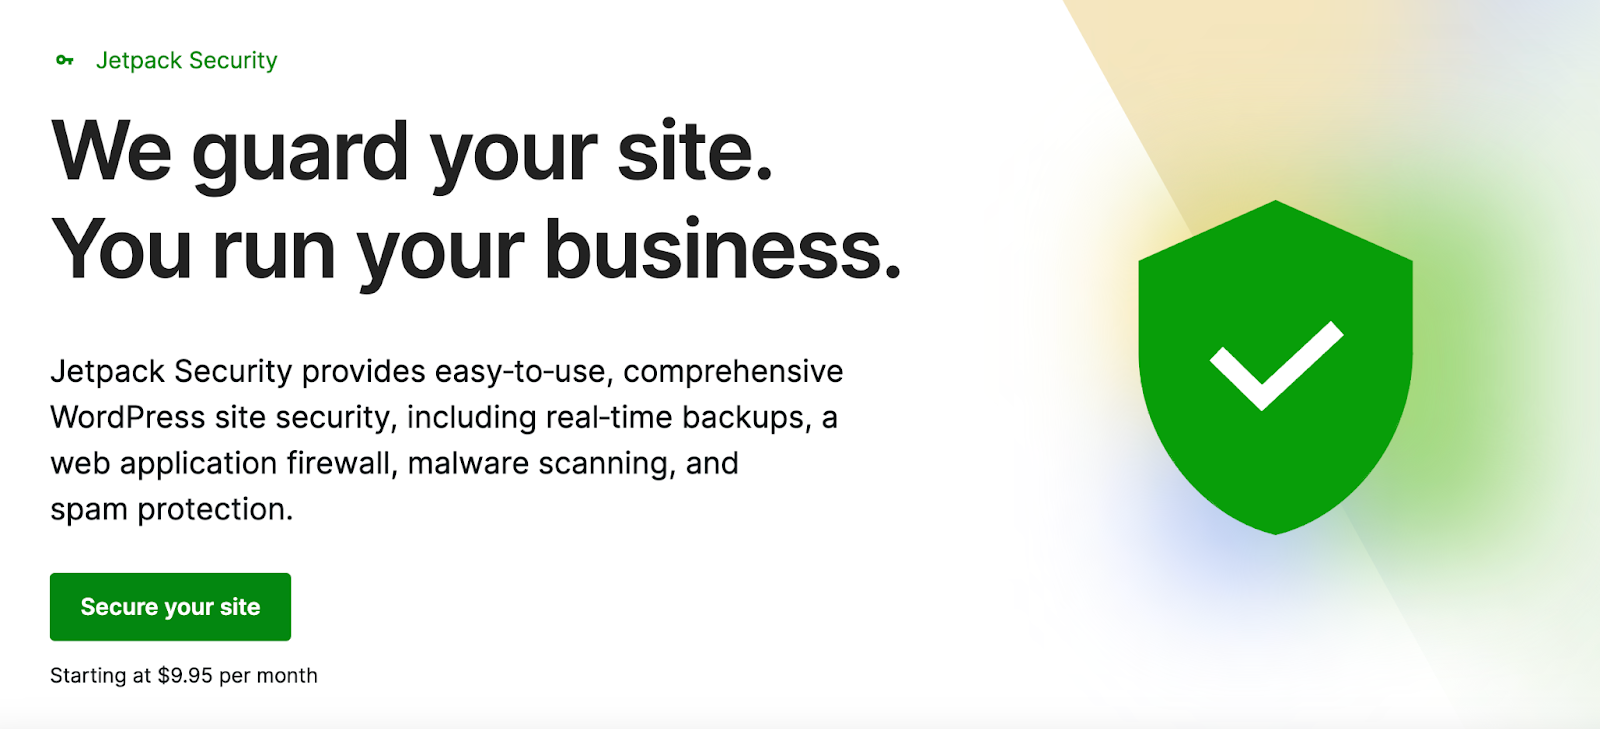 Jetpack Security ofrece protección integral para su sitio de WordPress, que abarca copias de seguridad en tiempo real, escaneo de malware, protección contra spam y más.